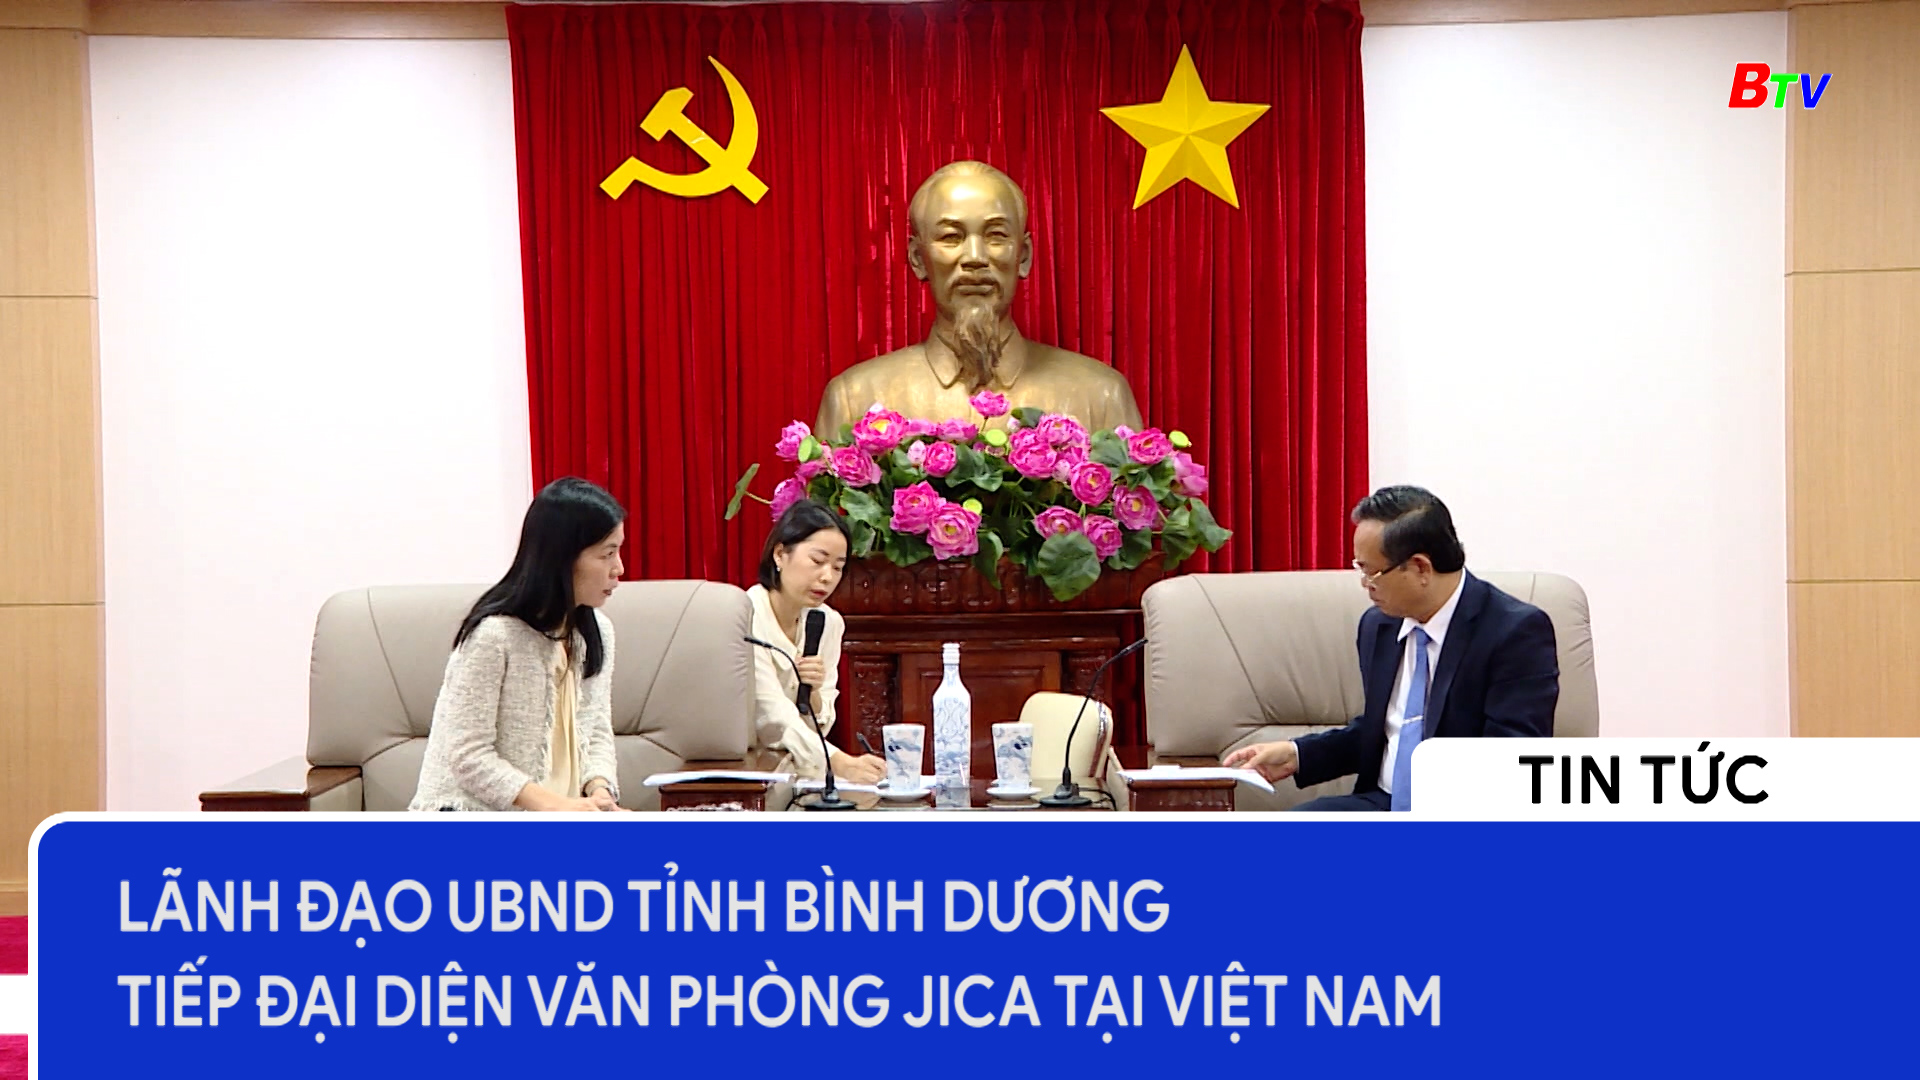 Lãnh đạo UBND tỉnh Bình Dương tiếp đại diện Văn phòng JICA tại Việt Nam